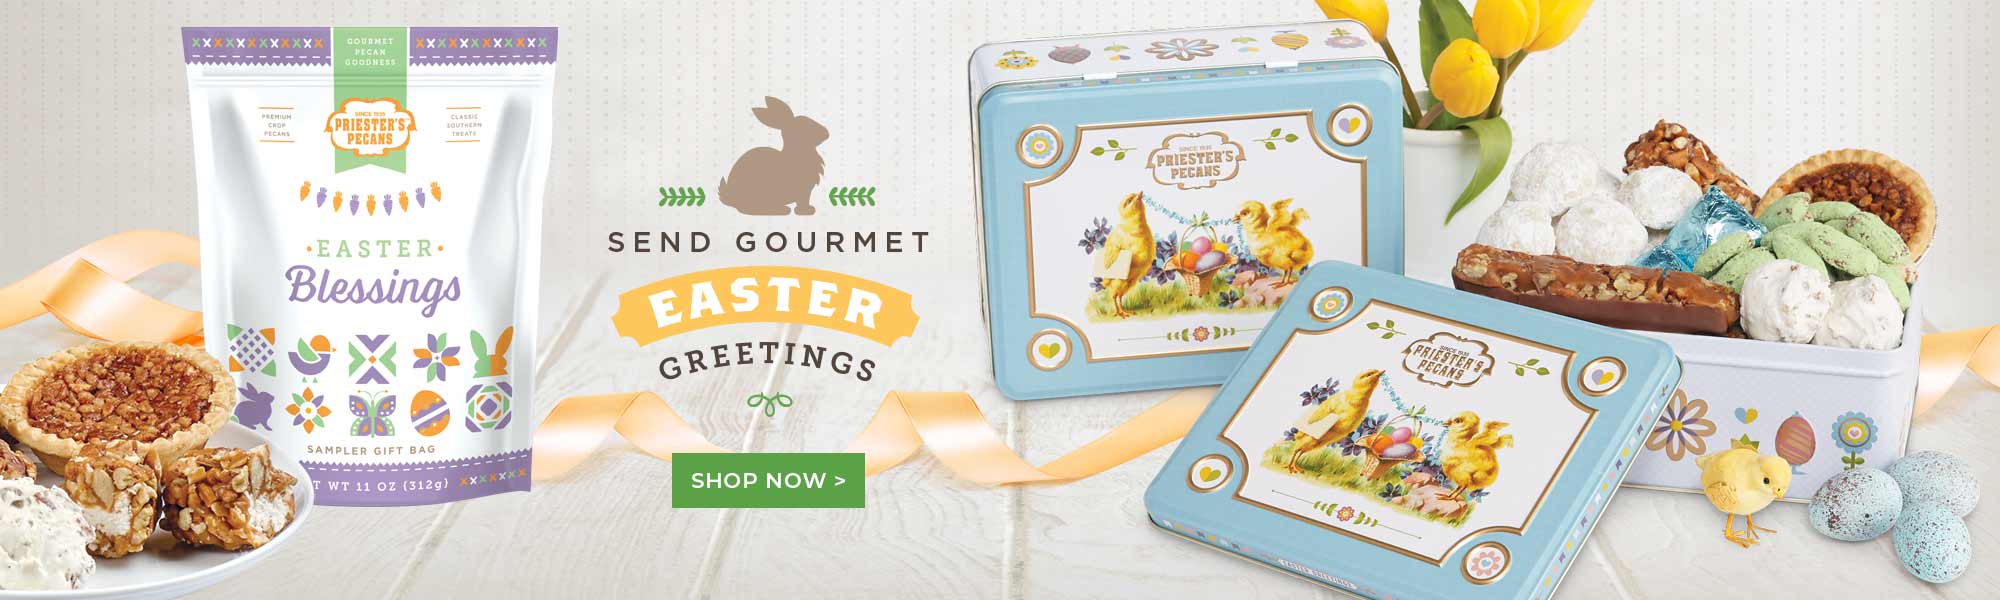 Send Gourmet Easter Greetings